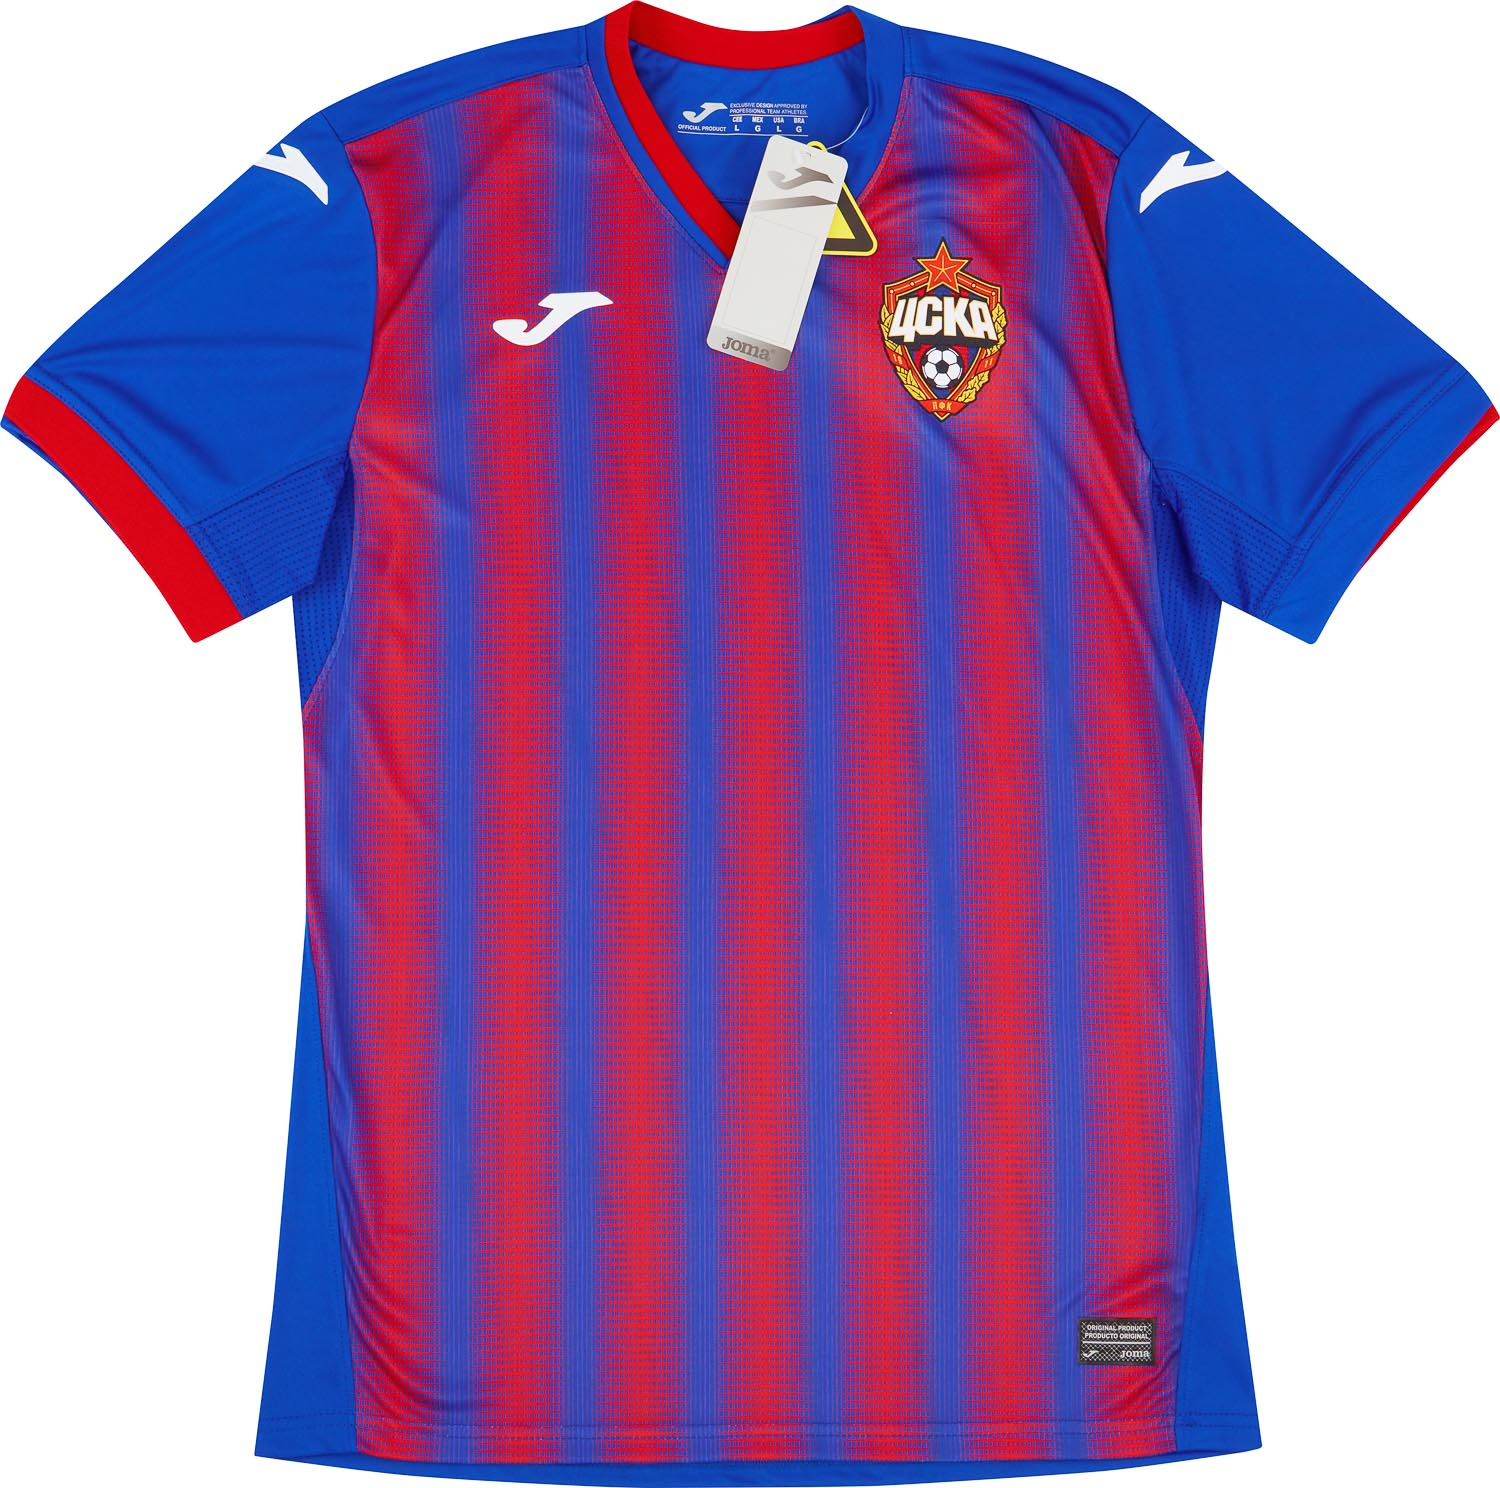 CSKA Moscow  home camisa (Original)